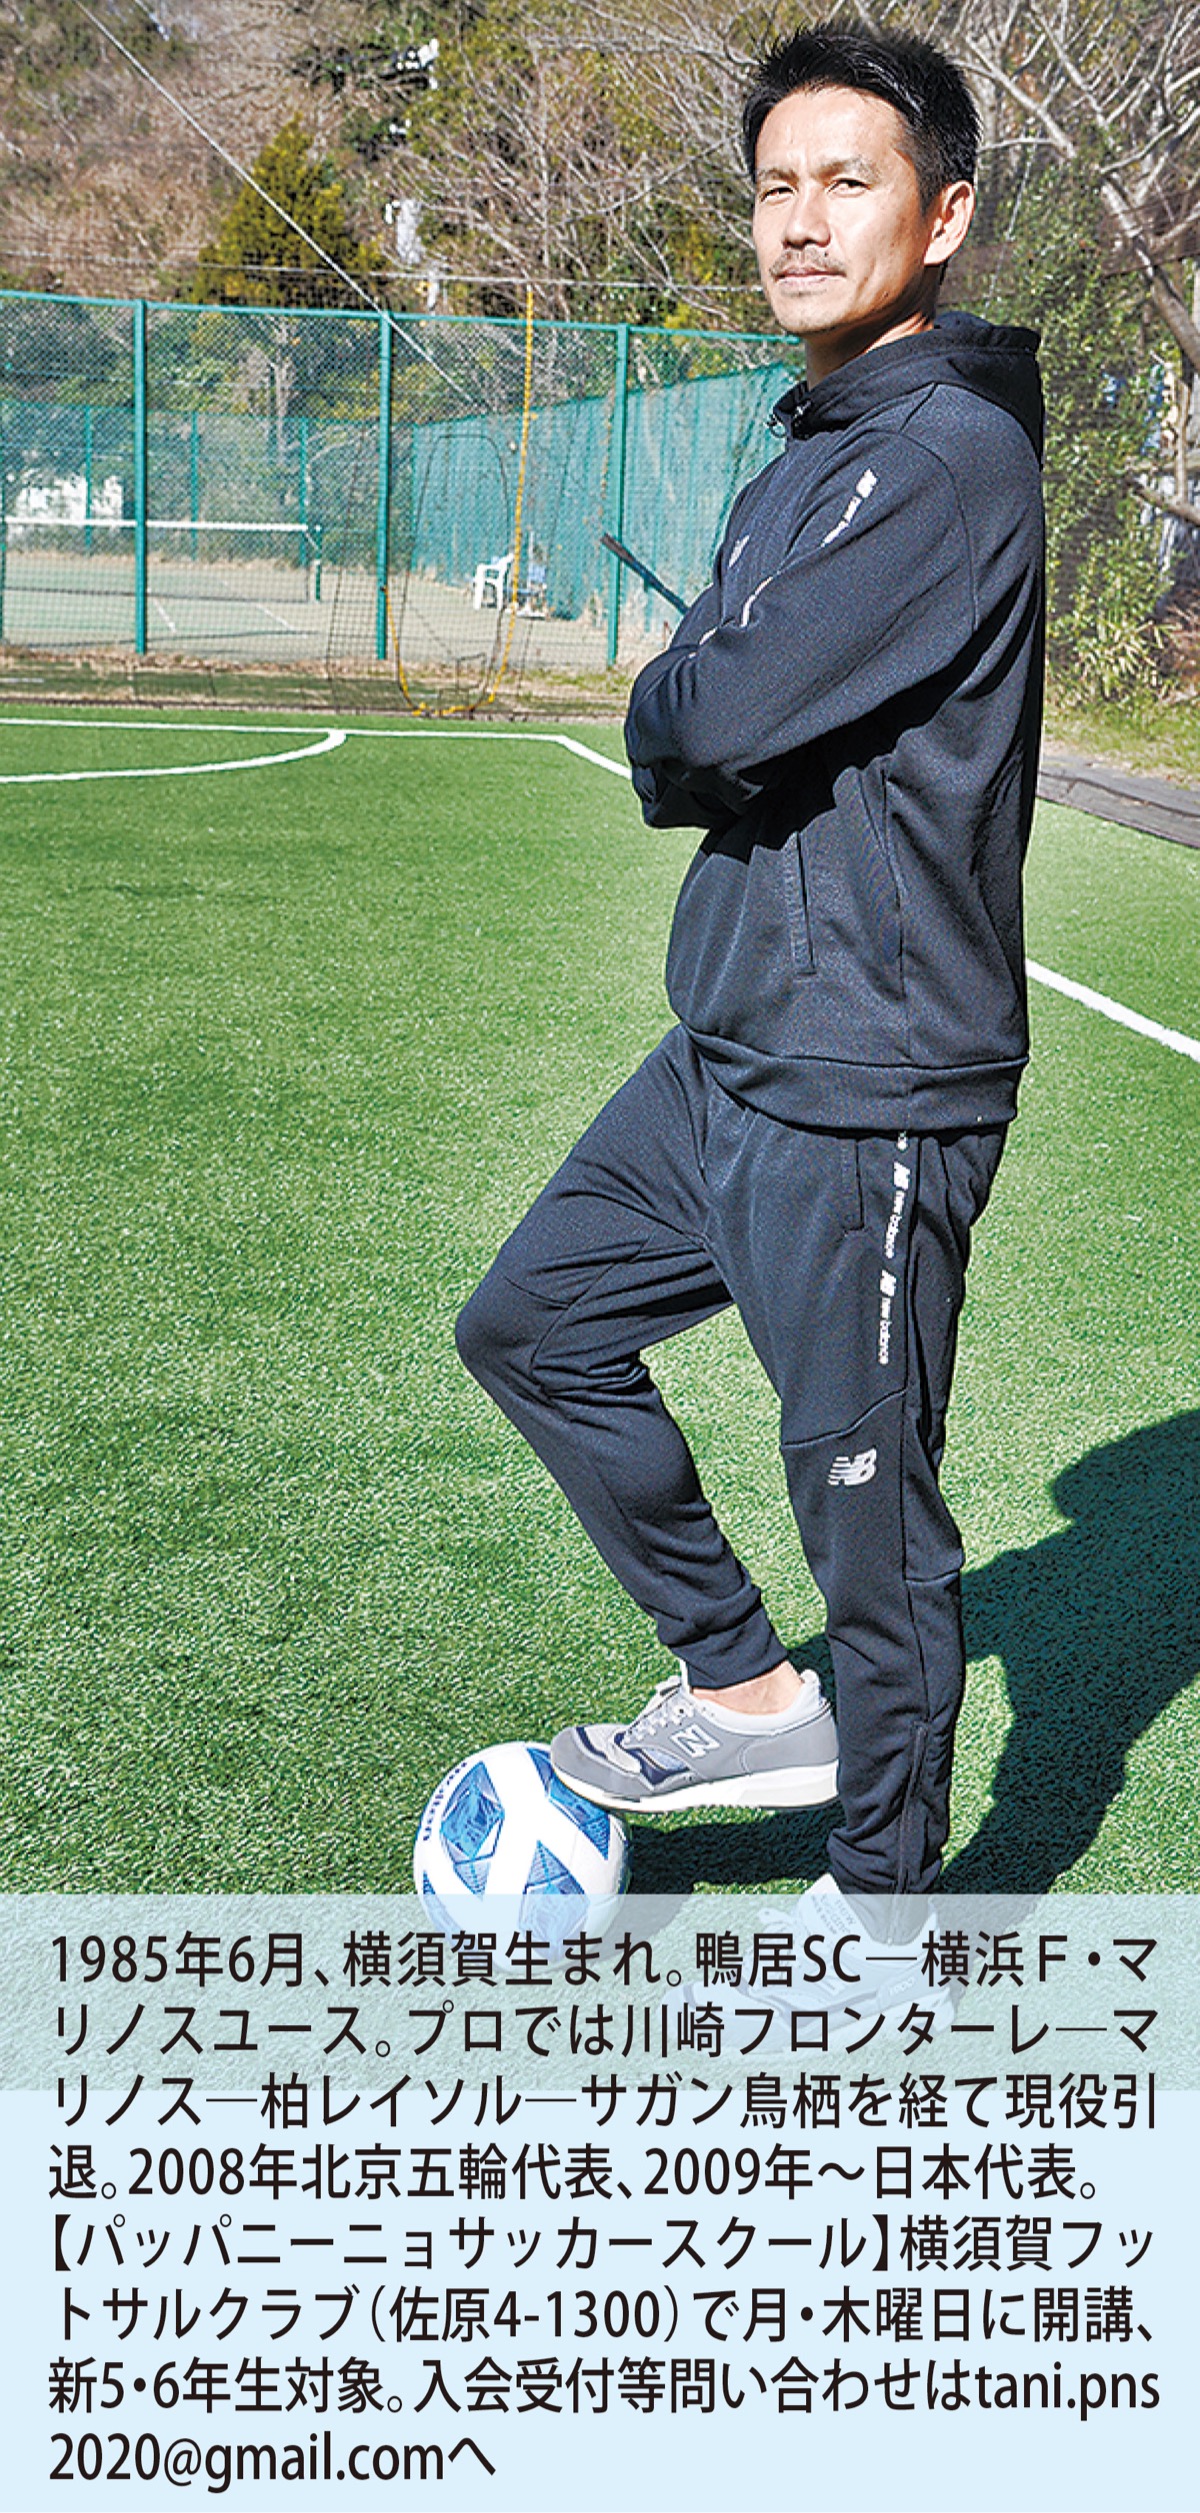 元日本代表谷口博之さん 子どもの可能性広げたい 今春 サッカースクール立ち上げ 逗子 葉山 タウンニュース